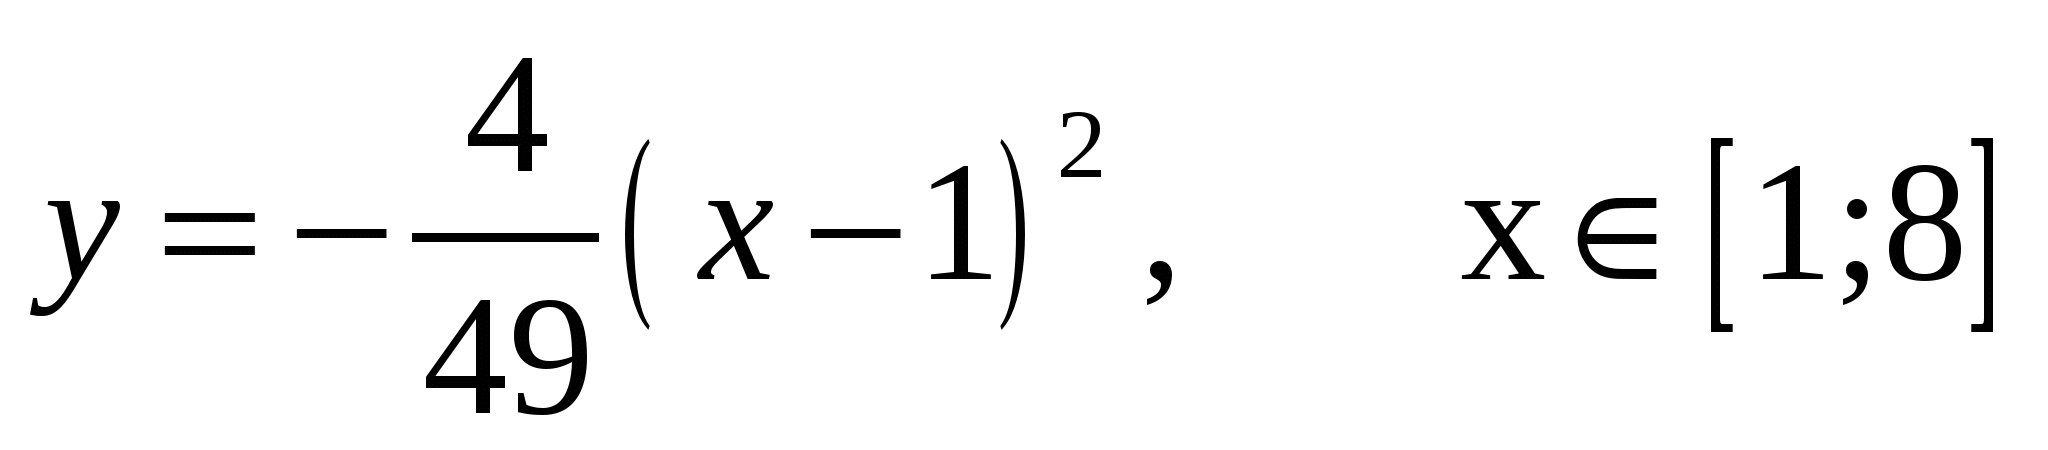 Урок-практикум по алгебре на тему Функция: y=ax^2+bx+c (заключительный урок по теме) - 8 класс